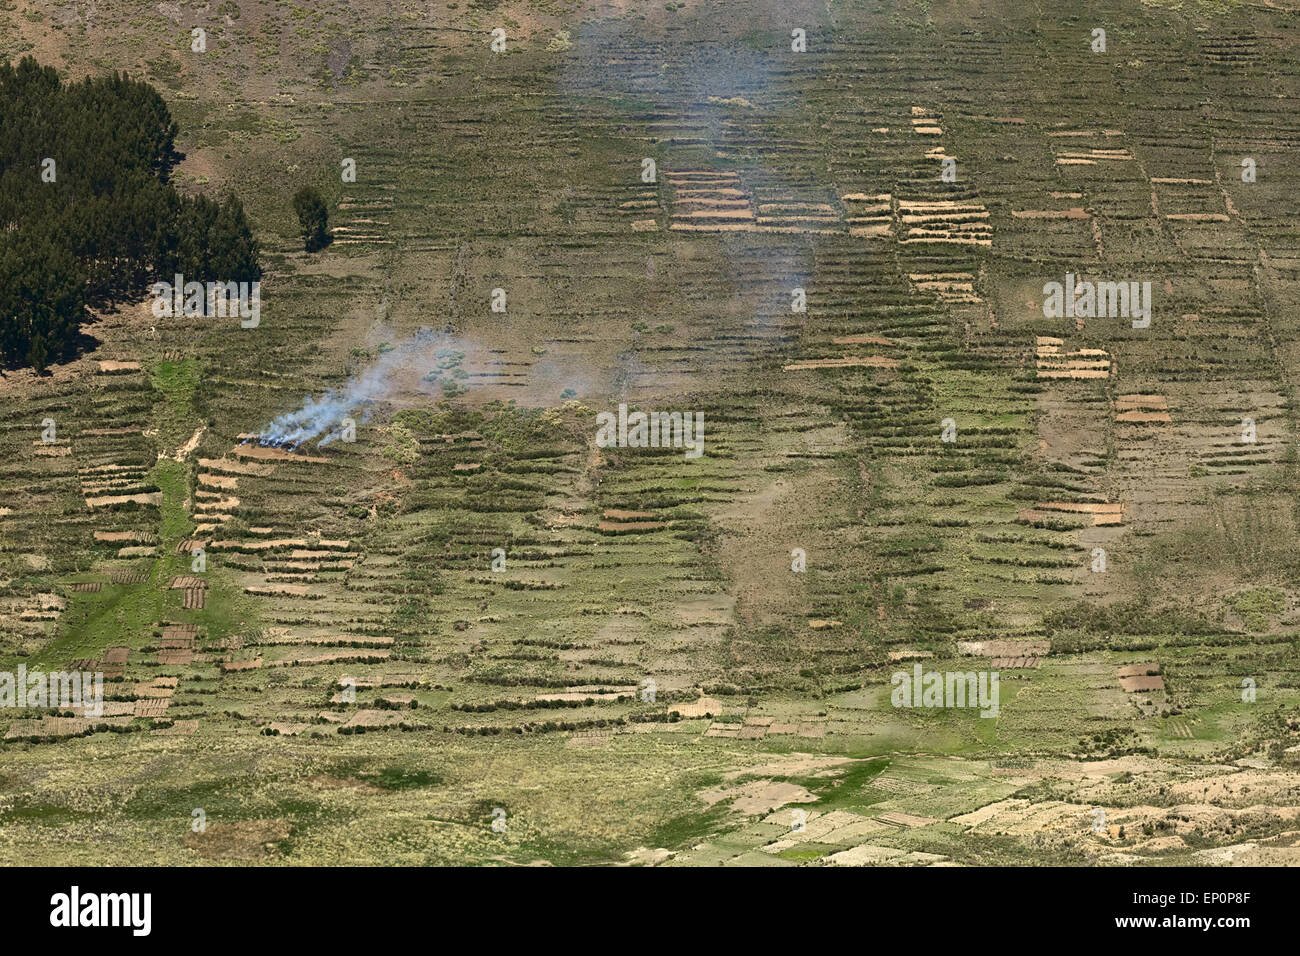 La fumée s'élevant à partir de la colline sur l'Isla del Sol (Île du Soleil) dans le lac Titicaca, Bolivie Banque D'Images